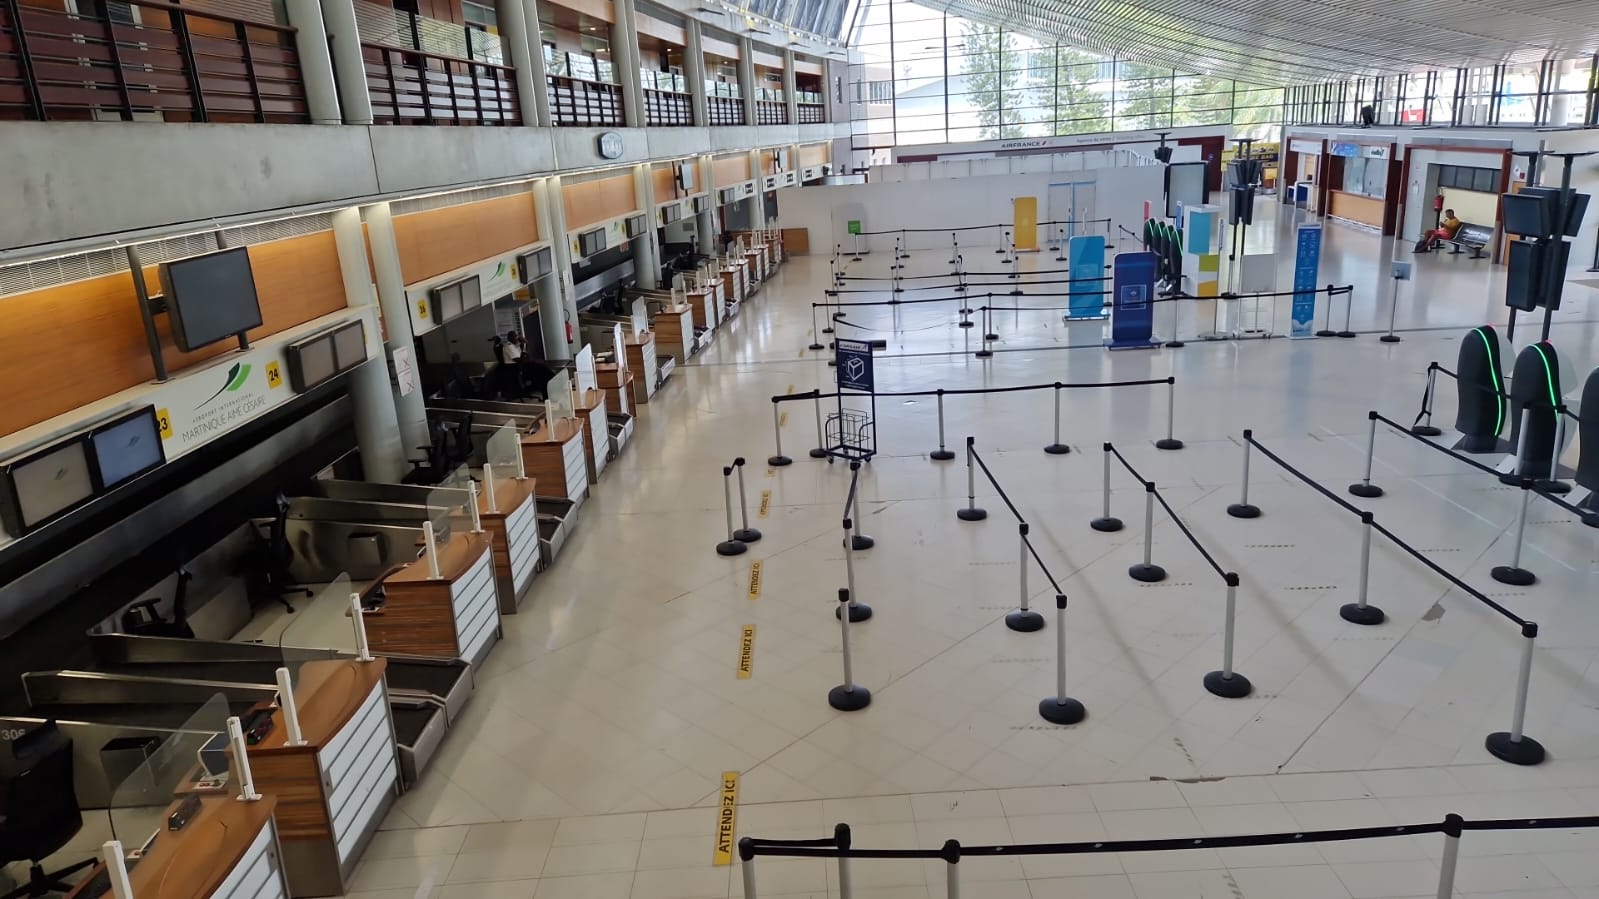     Fermeture de l’aéroport Aimé Césaire : les vols régionaux annulés

